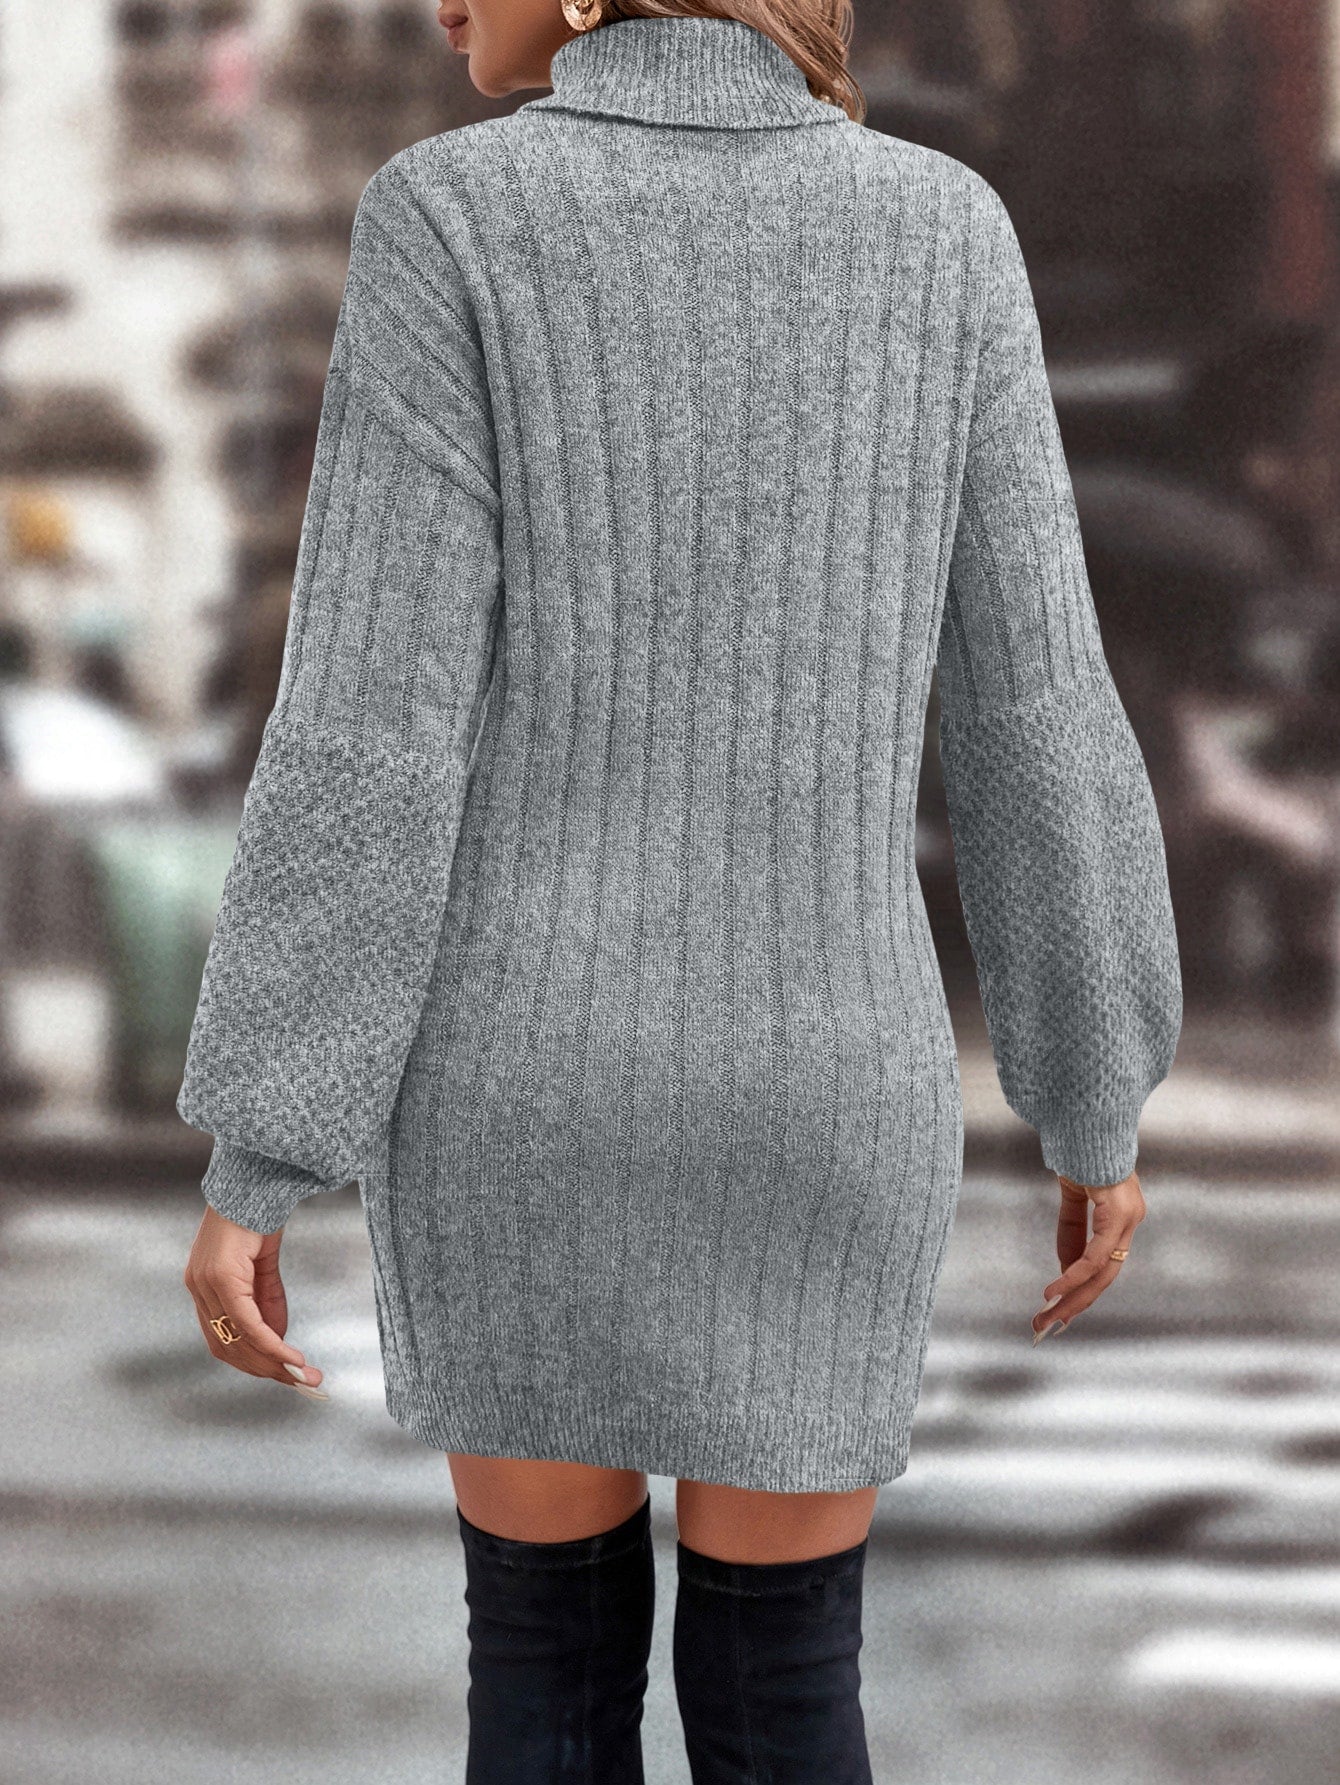 Women's Turtleneck Sweater Dress